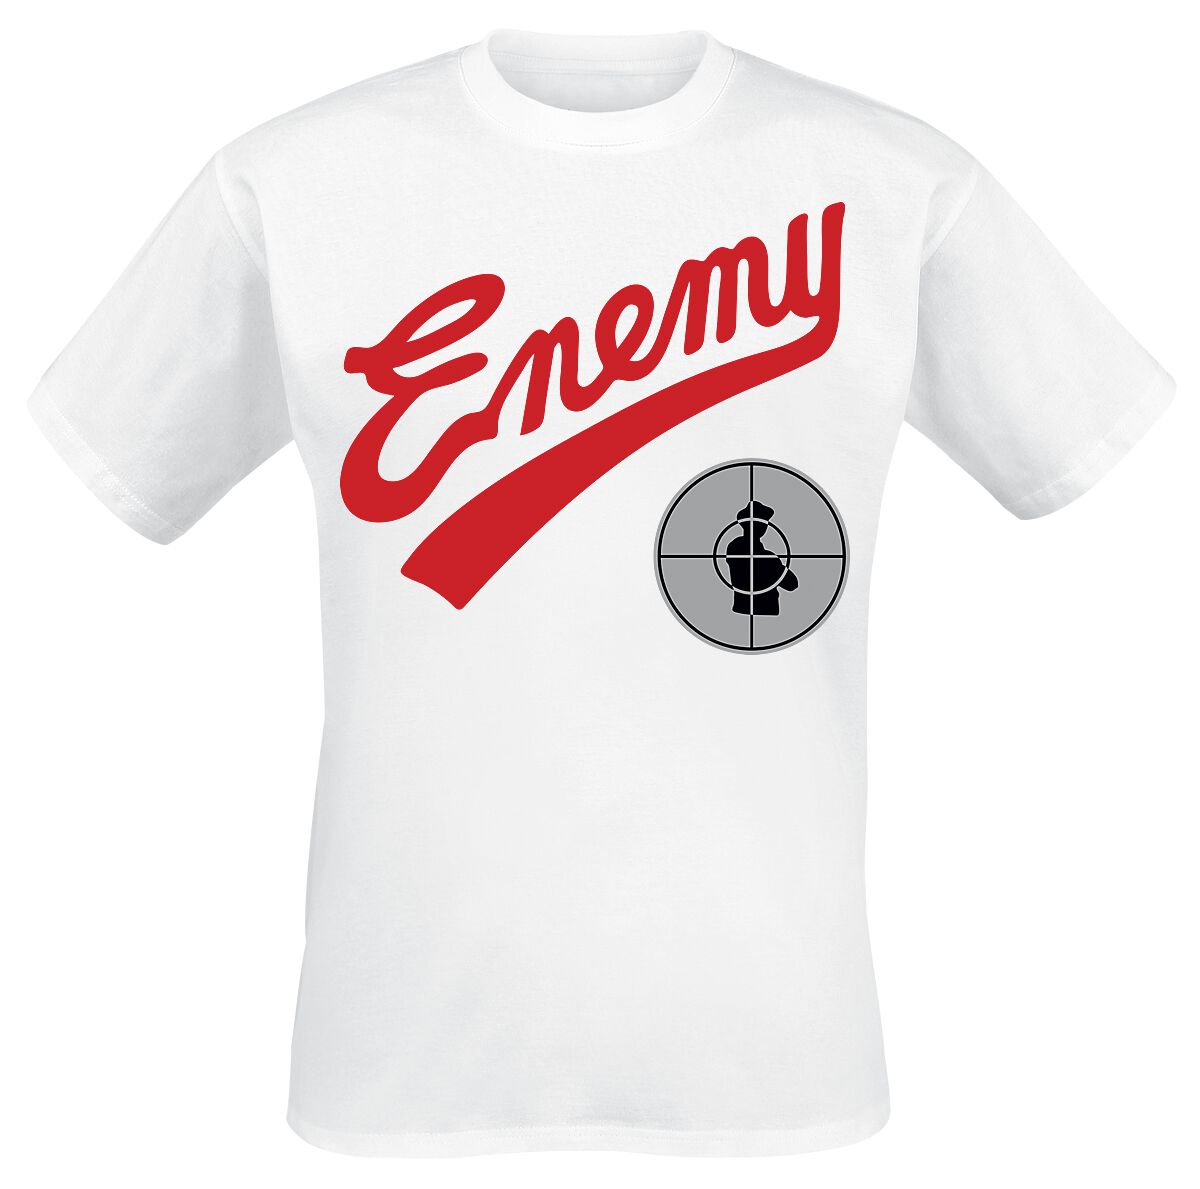 Public Enemy T-Shirt - Enemy Target - S bis M - für Männer - Größe S - weiß  - Lizenziertes Merchandise!